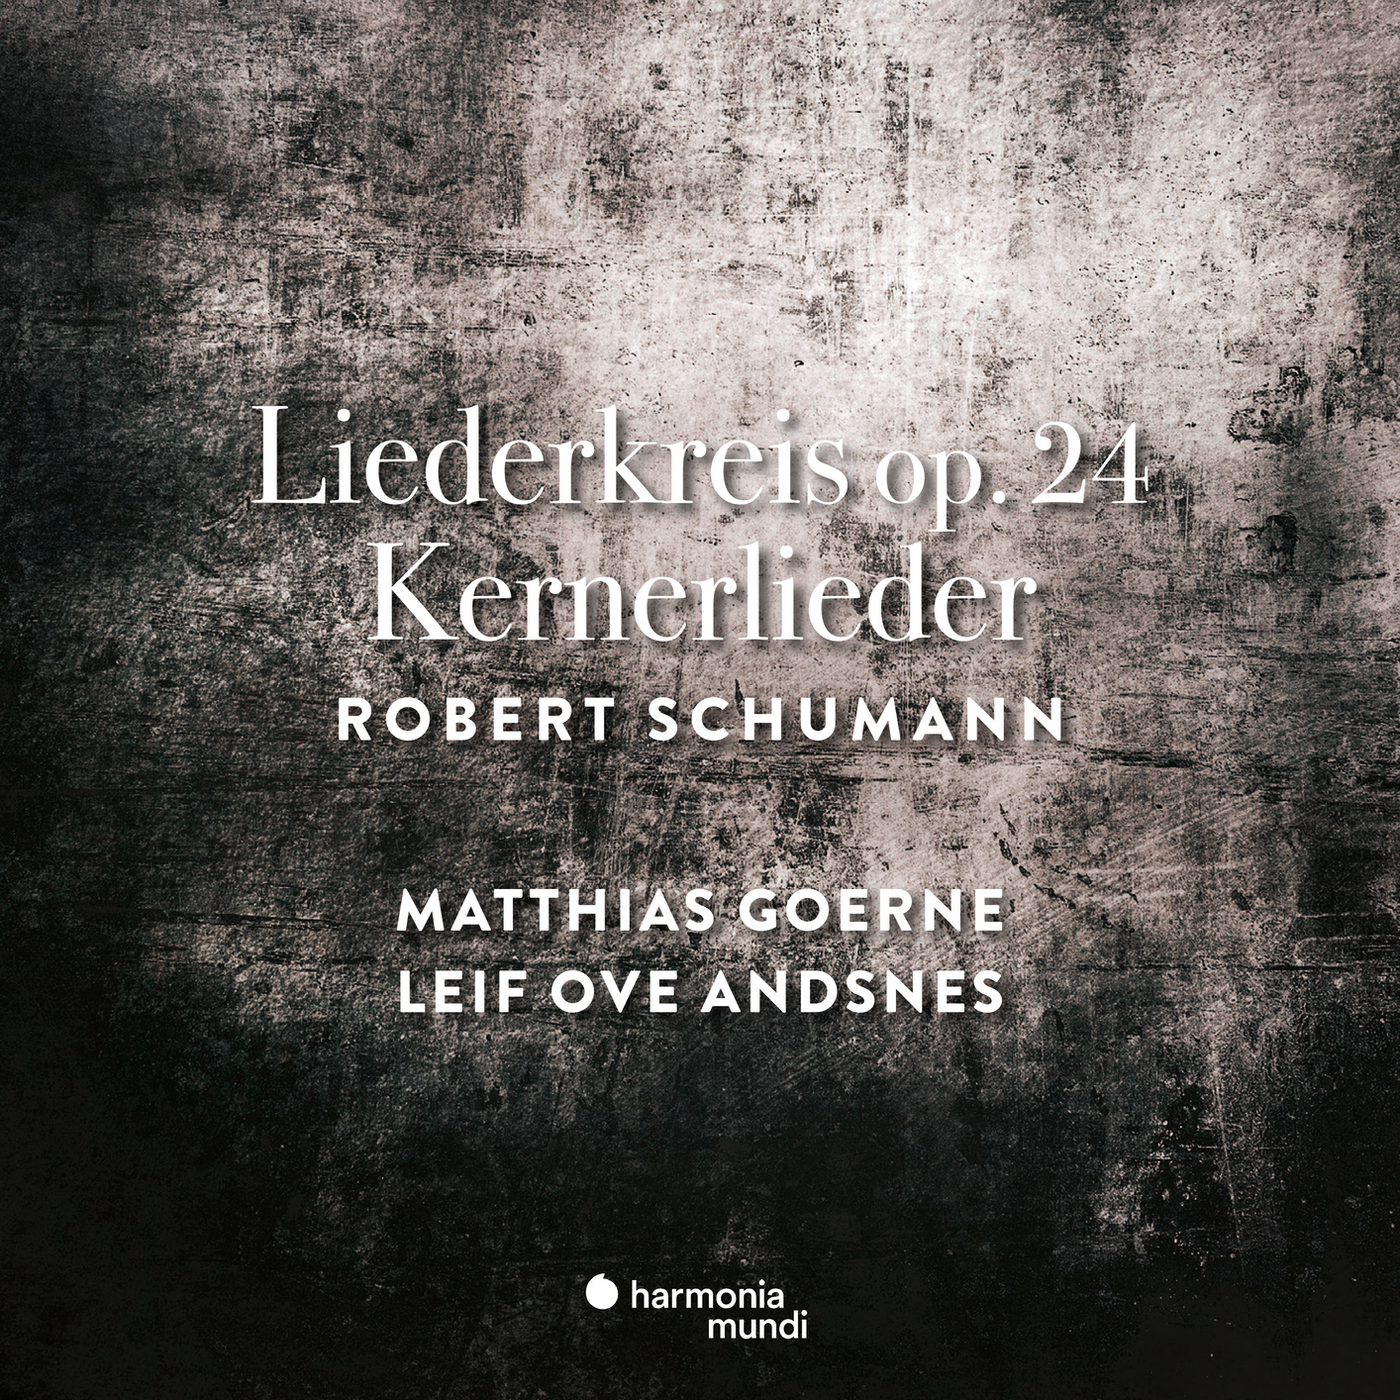 Matthias Goerne & Leif Ove Andsnes – Schumann: Liederkreis Op. 24 & Kernerlieder, Op. 35 (2019) [FLAC 24bit/96kHz]